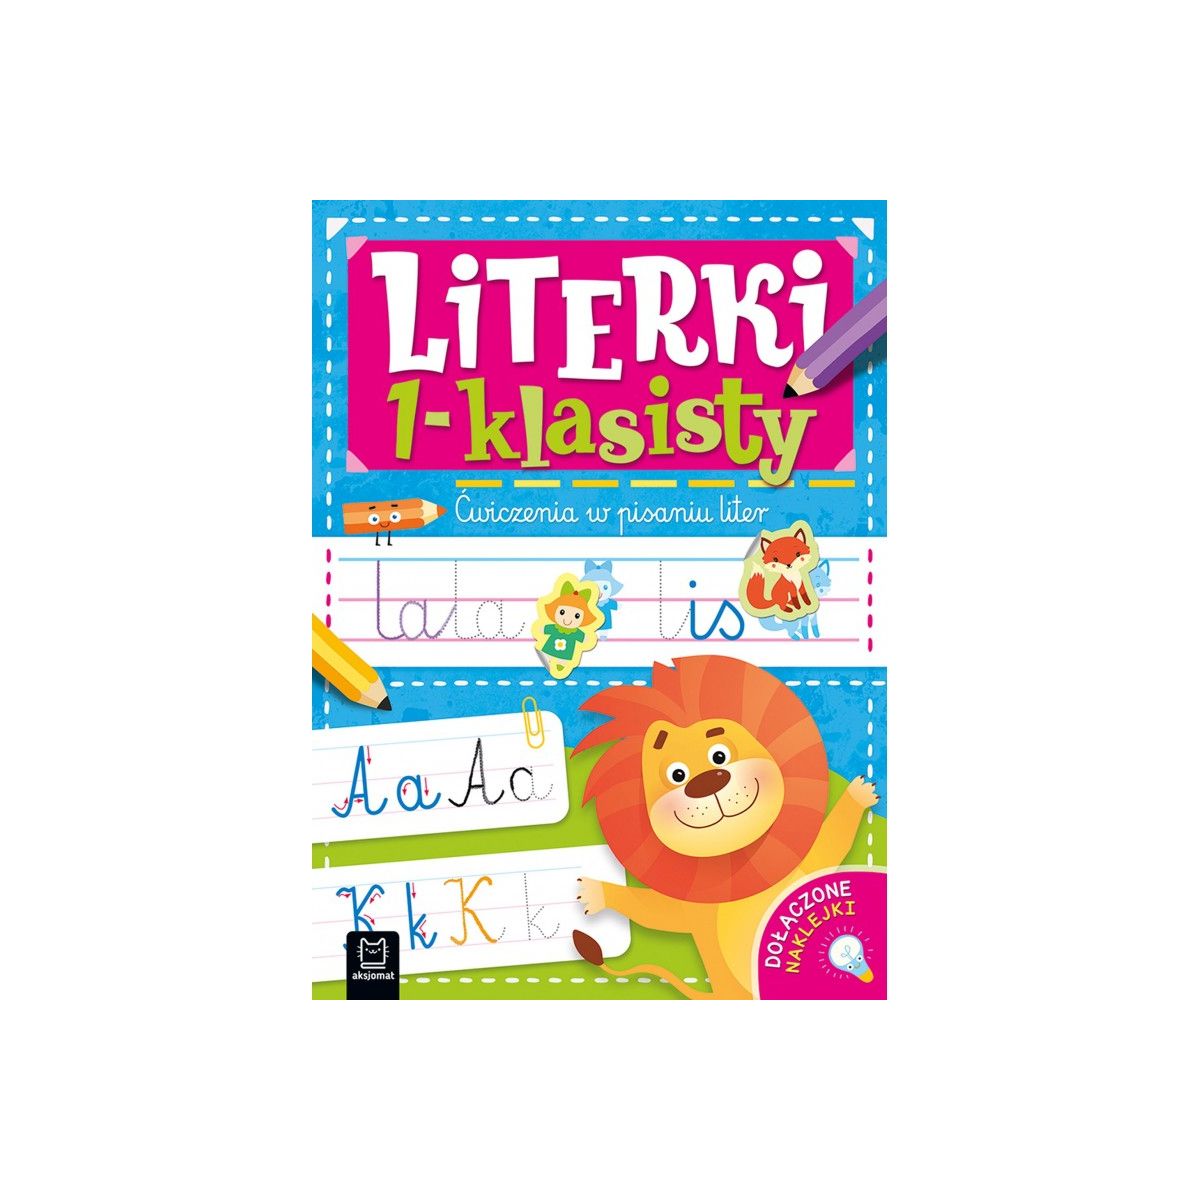 Książka dla dzieci Literki 1-klasisty. Ćwiczenia w pisaniu liter